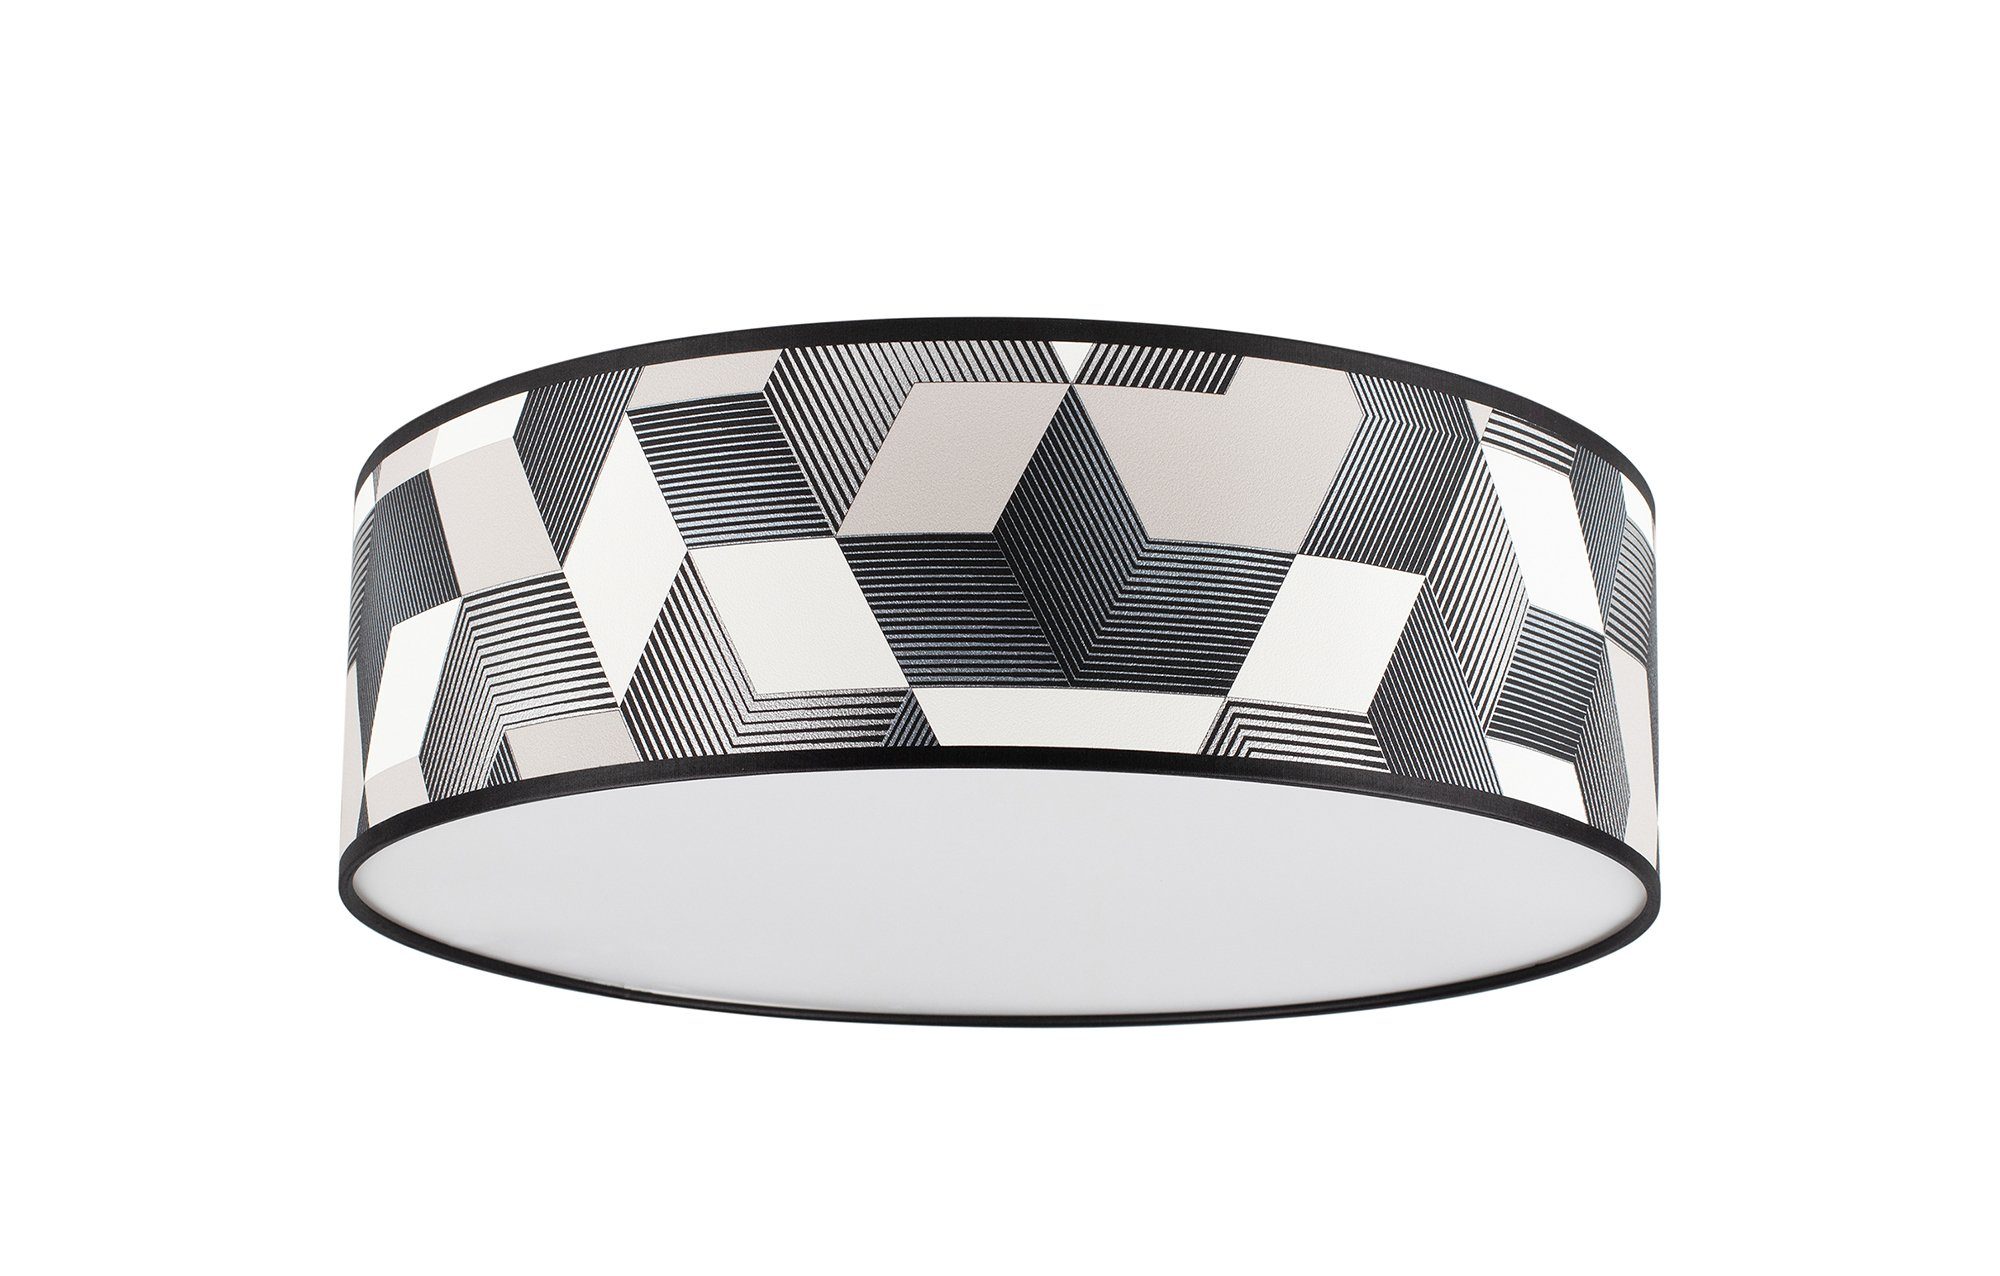 BRITOP LIGHTING Plafondlamp ESPACIO Lampenkap bevestigd aan magneten - gemakkelijke montage en reiniging, van gelamineerd behang met acrylrand, bijpassende LM E27 / exclusief, Made